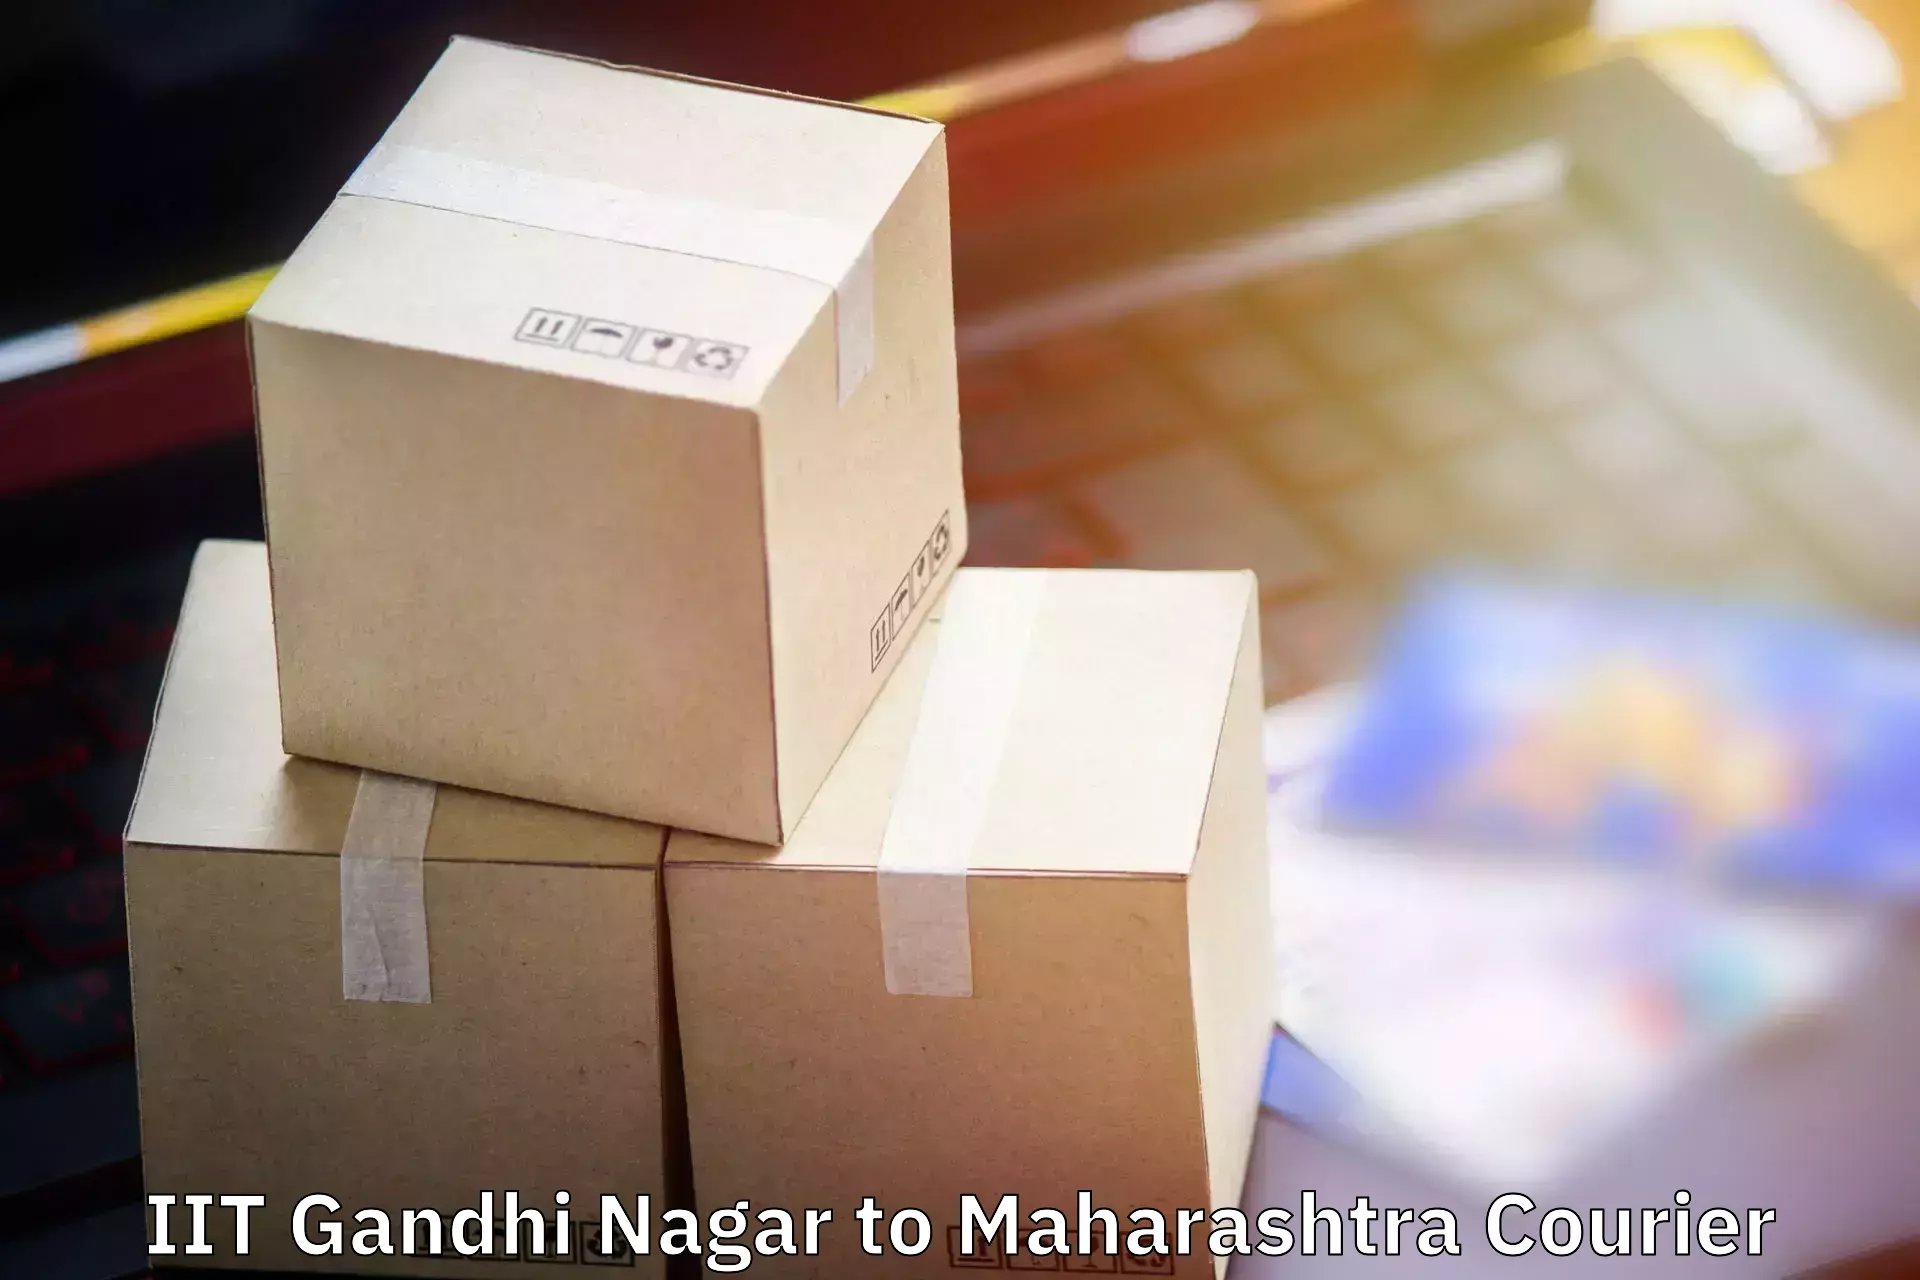 Luggage transport consulting IIT Gandhi Nagar to Mahabaleshwar